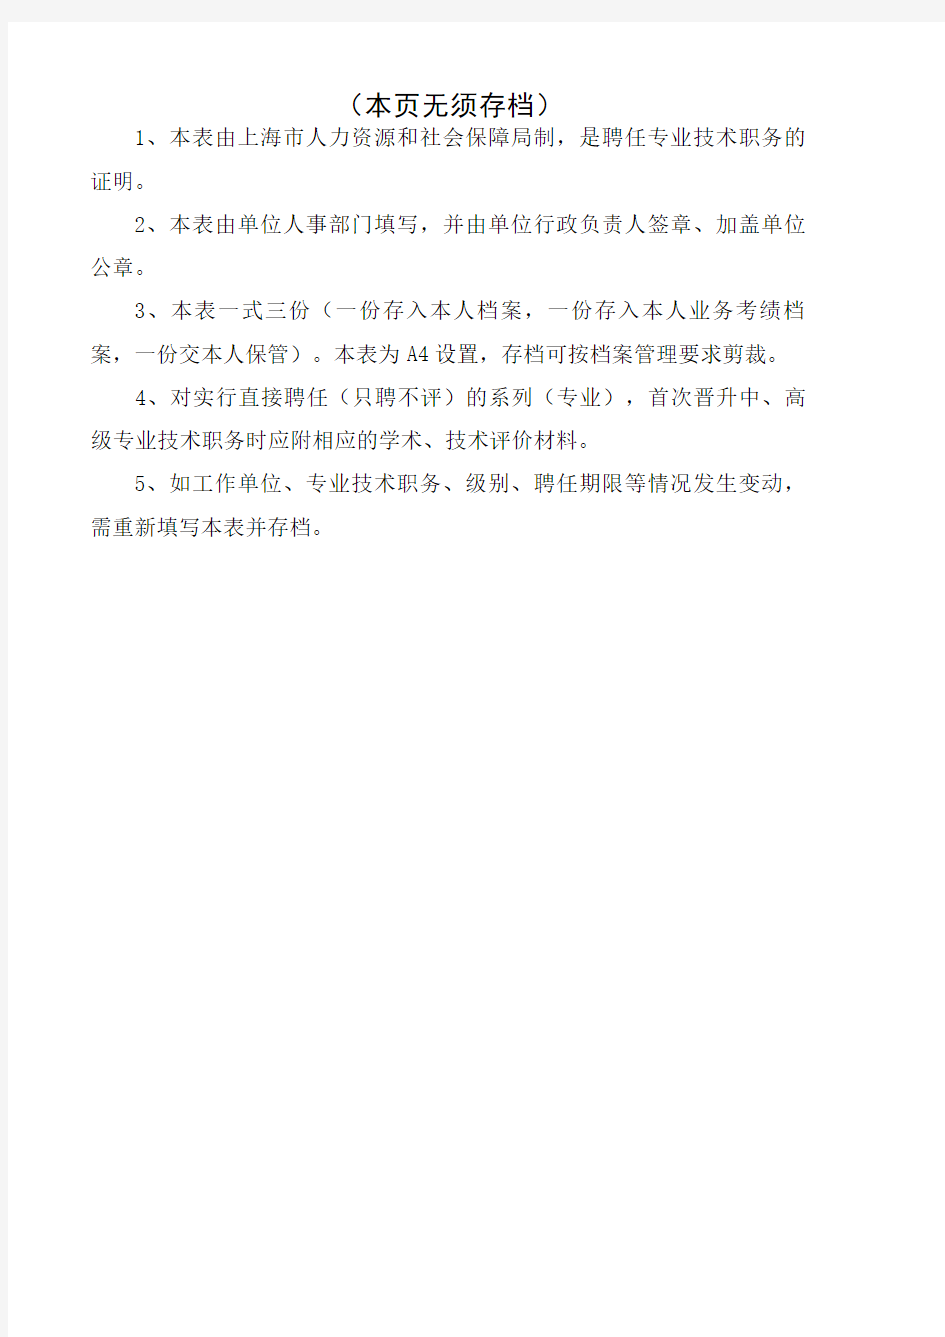 上海专业技术职务聘任表(职称评定聘书模板)